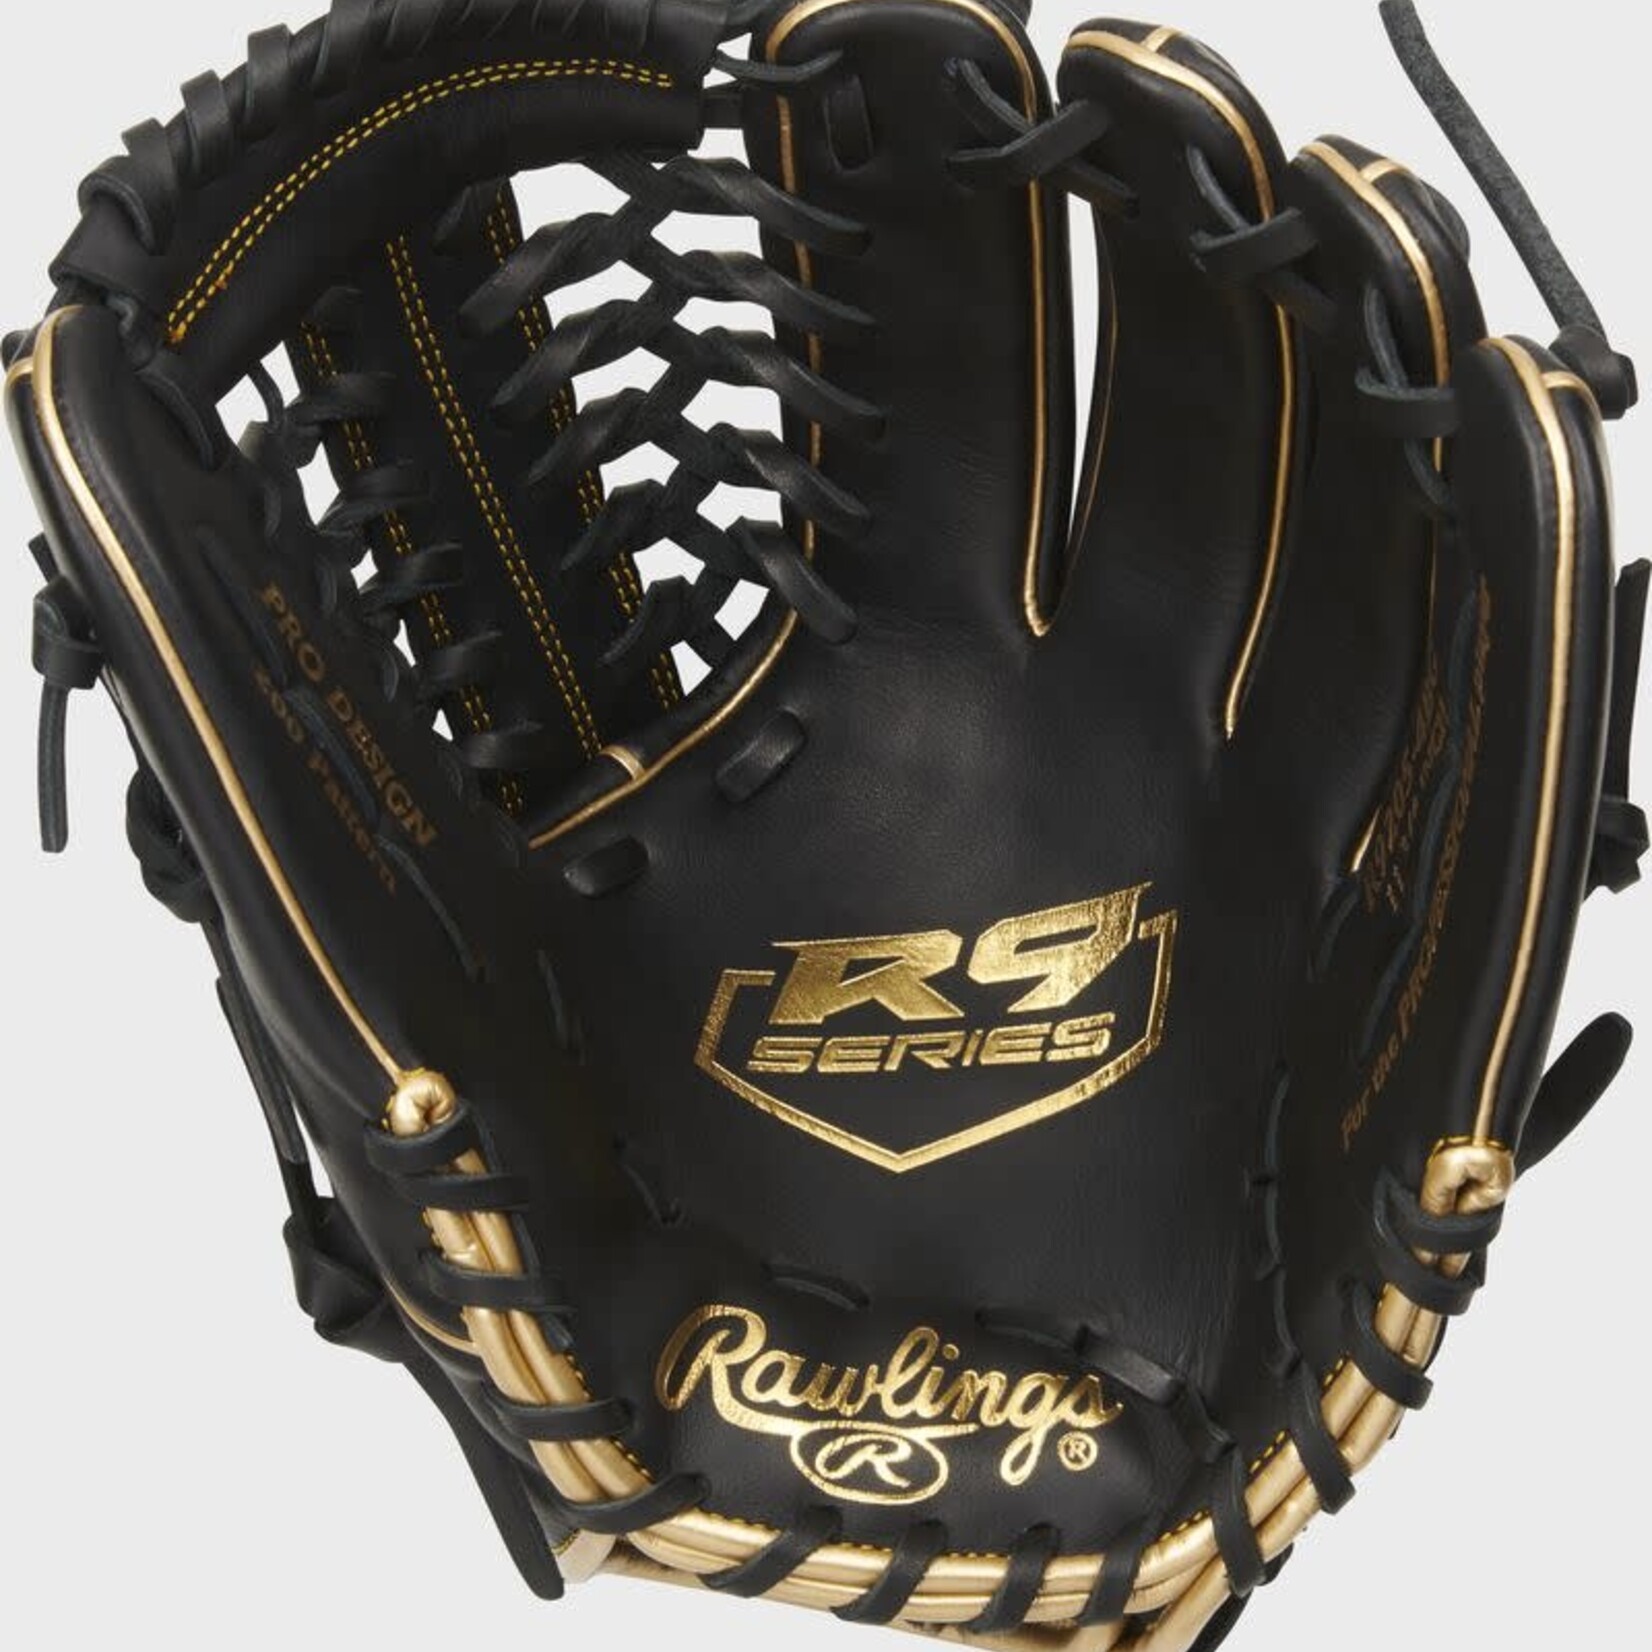 Rawlings Rawlings Baseball Glove, R9 Series, R9205-4BG, 11.75”, Reg